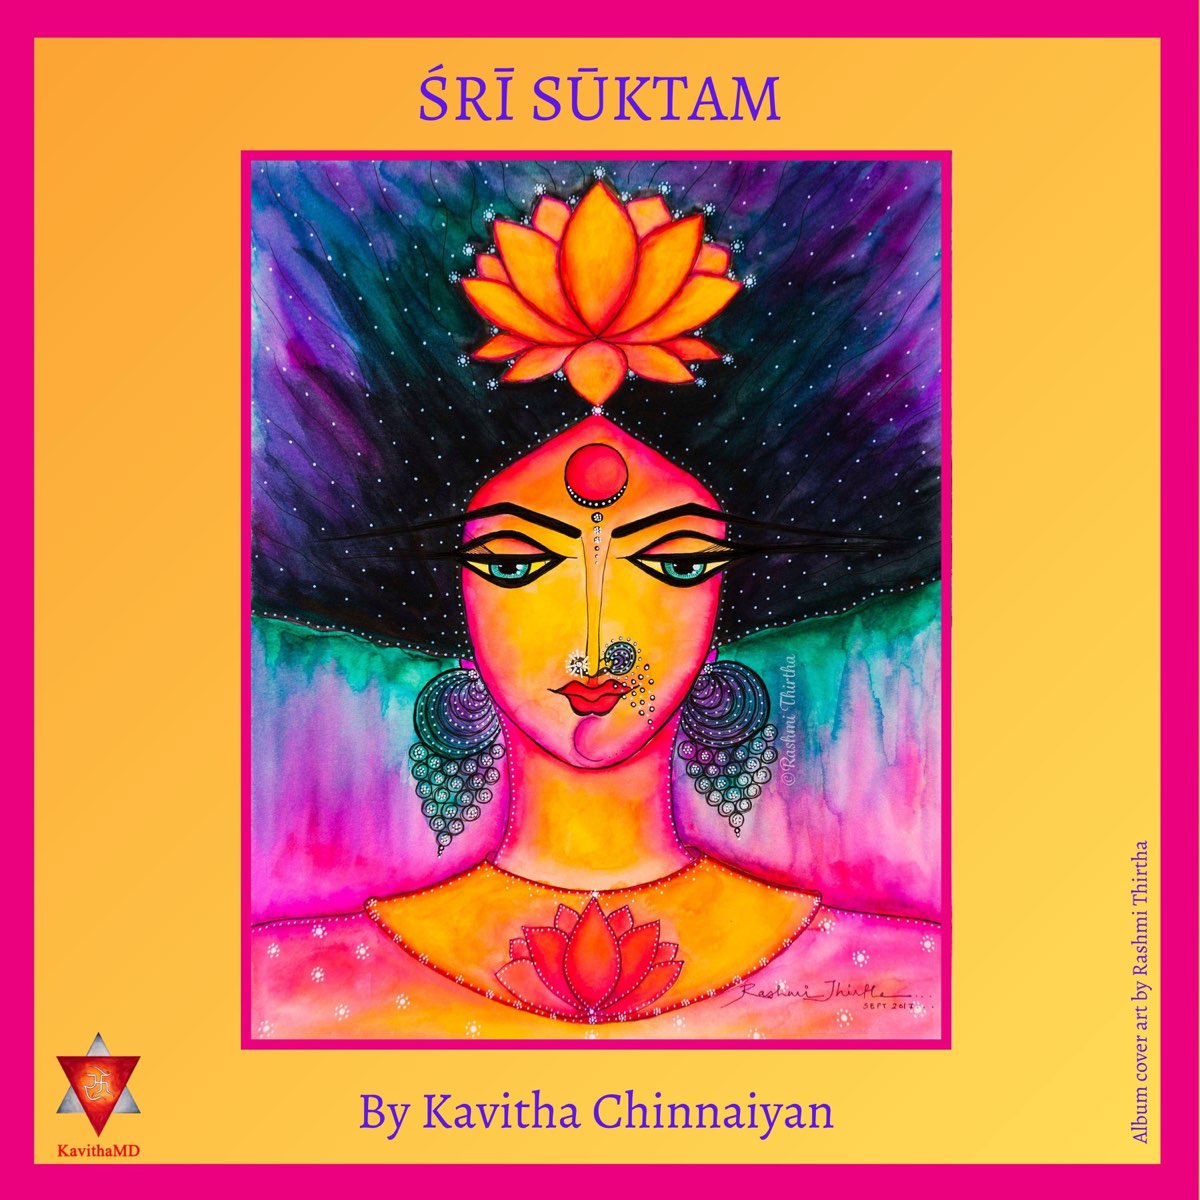 ‎Sri Suktam - Single by Kavitha Chinnaiyan on Apple Music